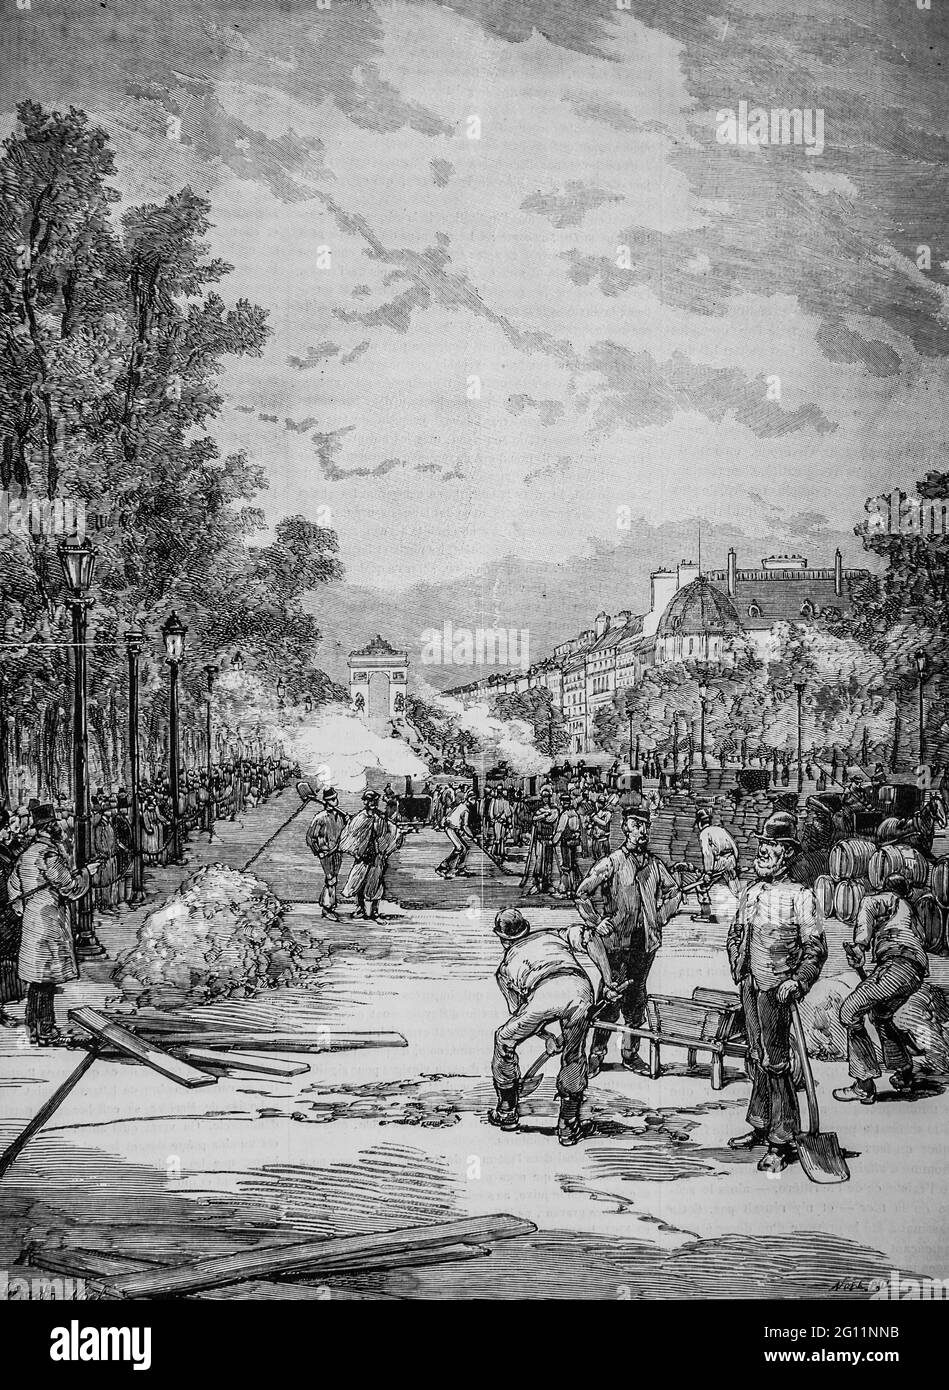 la construction du nouveau pavage en bois de l'Avenue des champs elysees ,l'univers illuste 1882,editeur librairie nouvelle Stockfoto